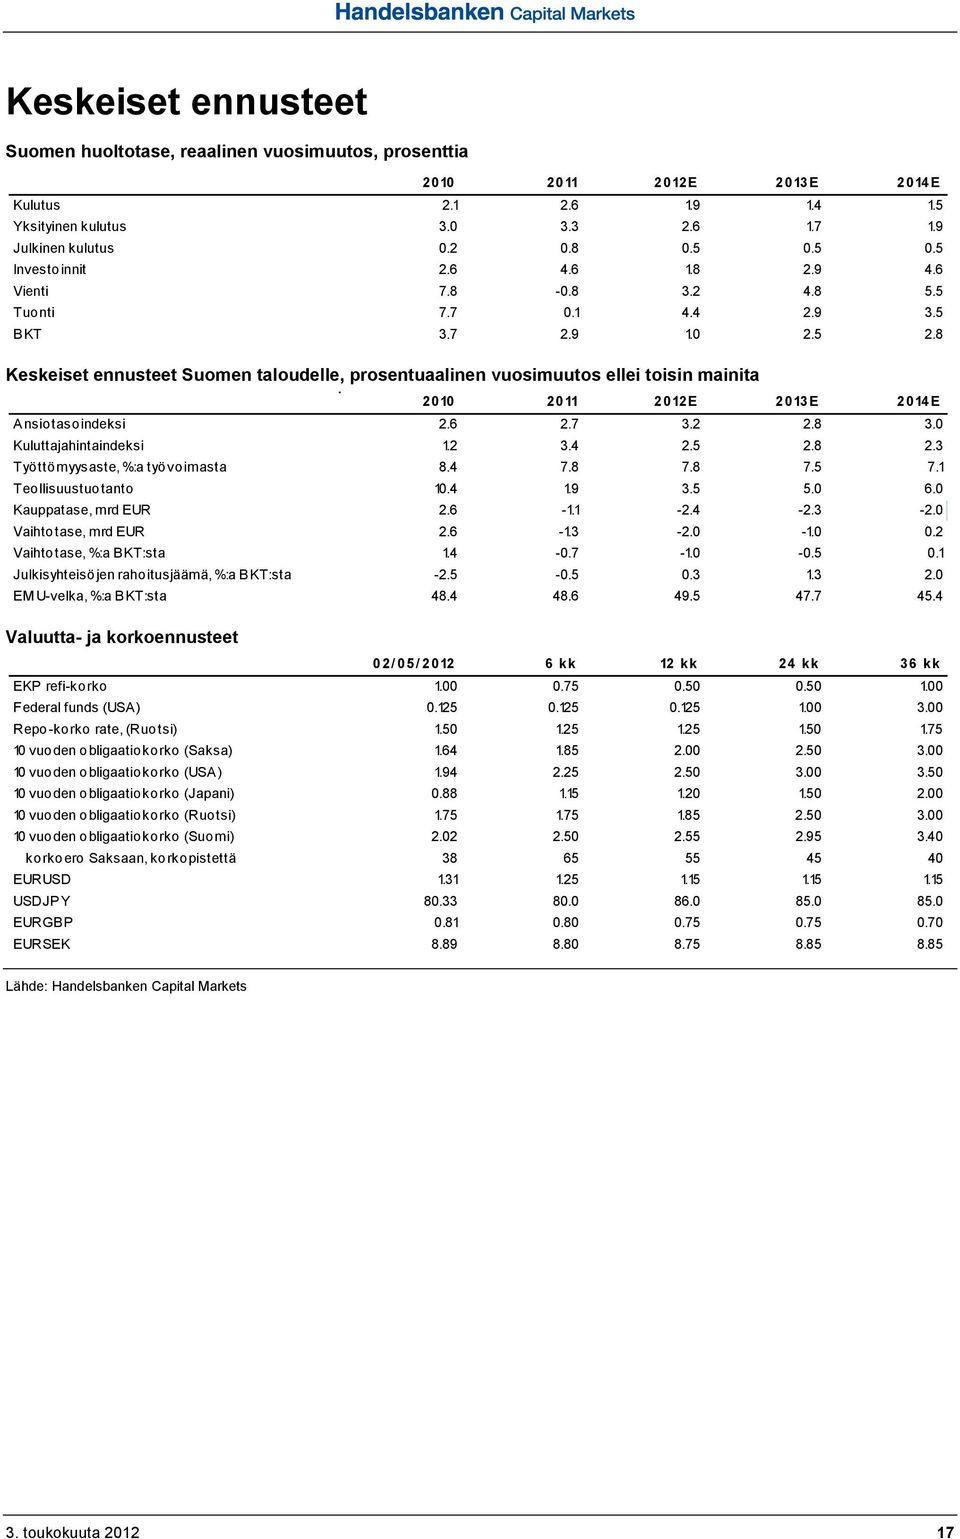 8 Keskeiset ennusteet Suomen taloudelle, prosentuaalinen vuosimuutos ellei toisin mainita 2010 2011 2012E 2013E 2014E Ansiotasoindeksi 2.6 2.7 3.2 2.8 3.0 Kuluttajahintaindeksi 1.2 3.4 2.5 2.8 2.